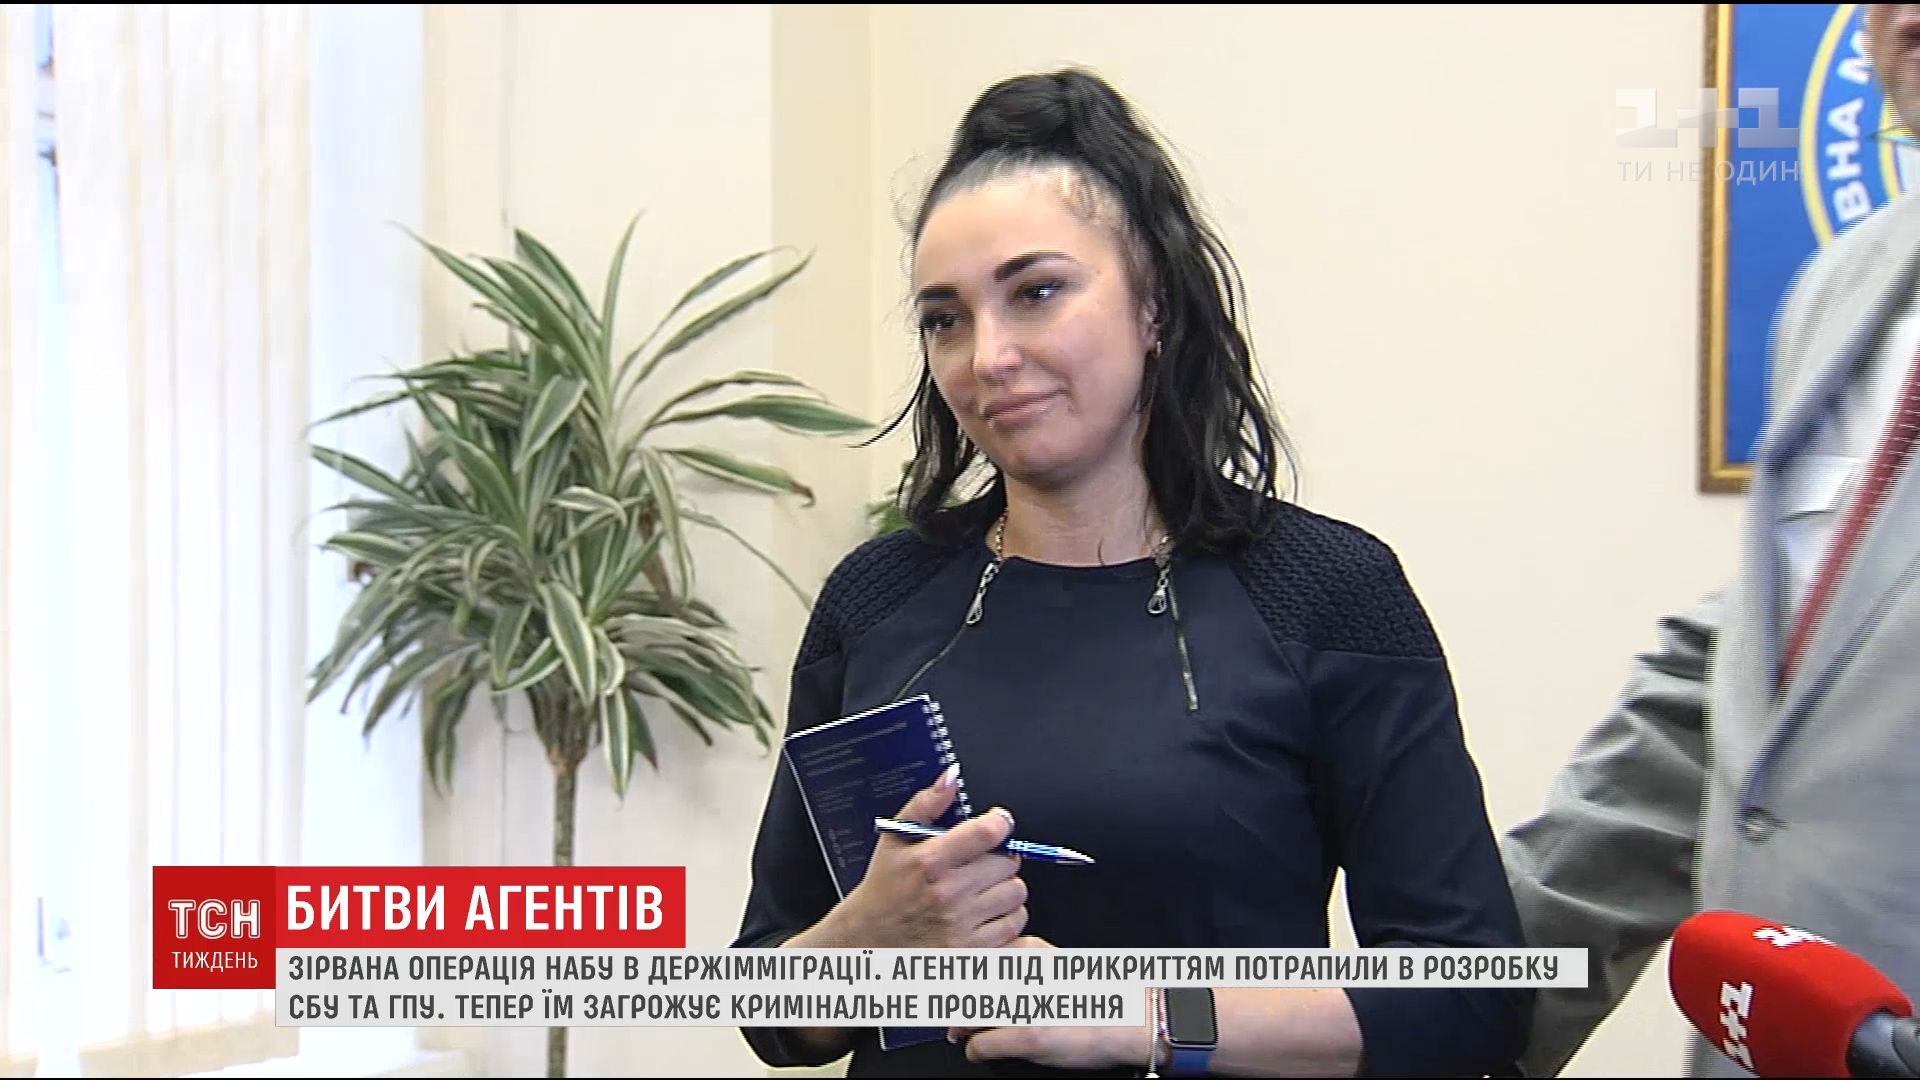 Пимахова назвала обыски НАБУ местью / кадр из видео ТСН 